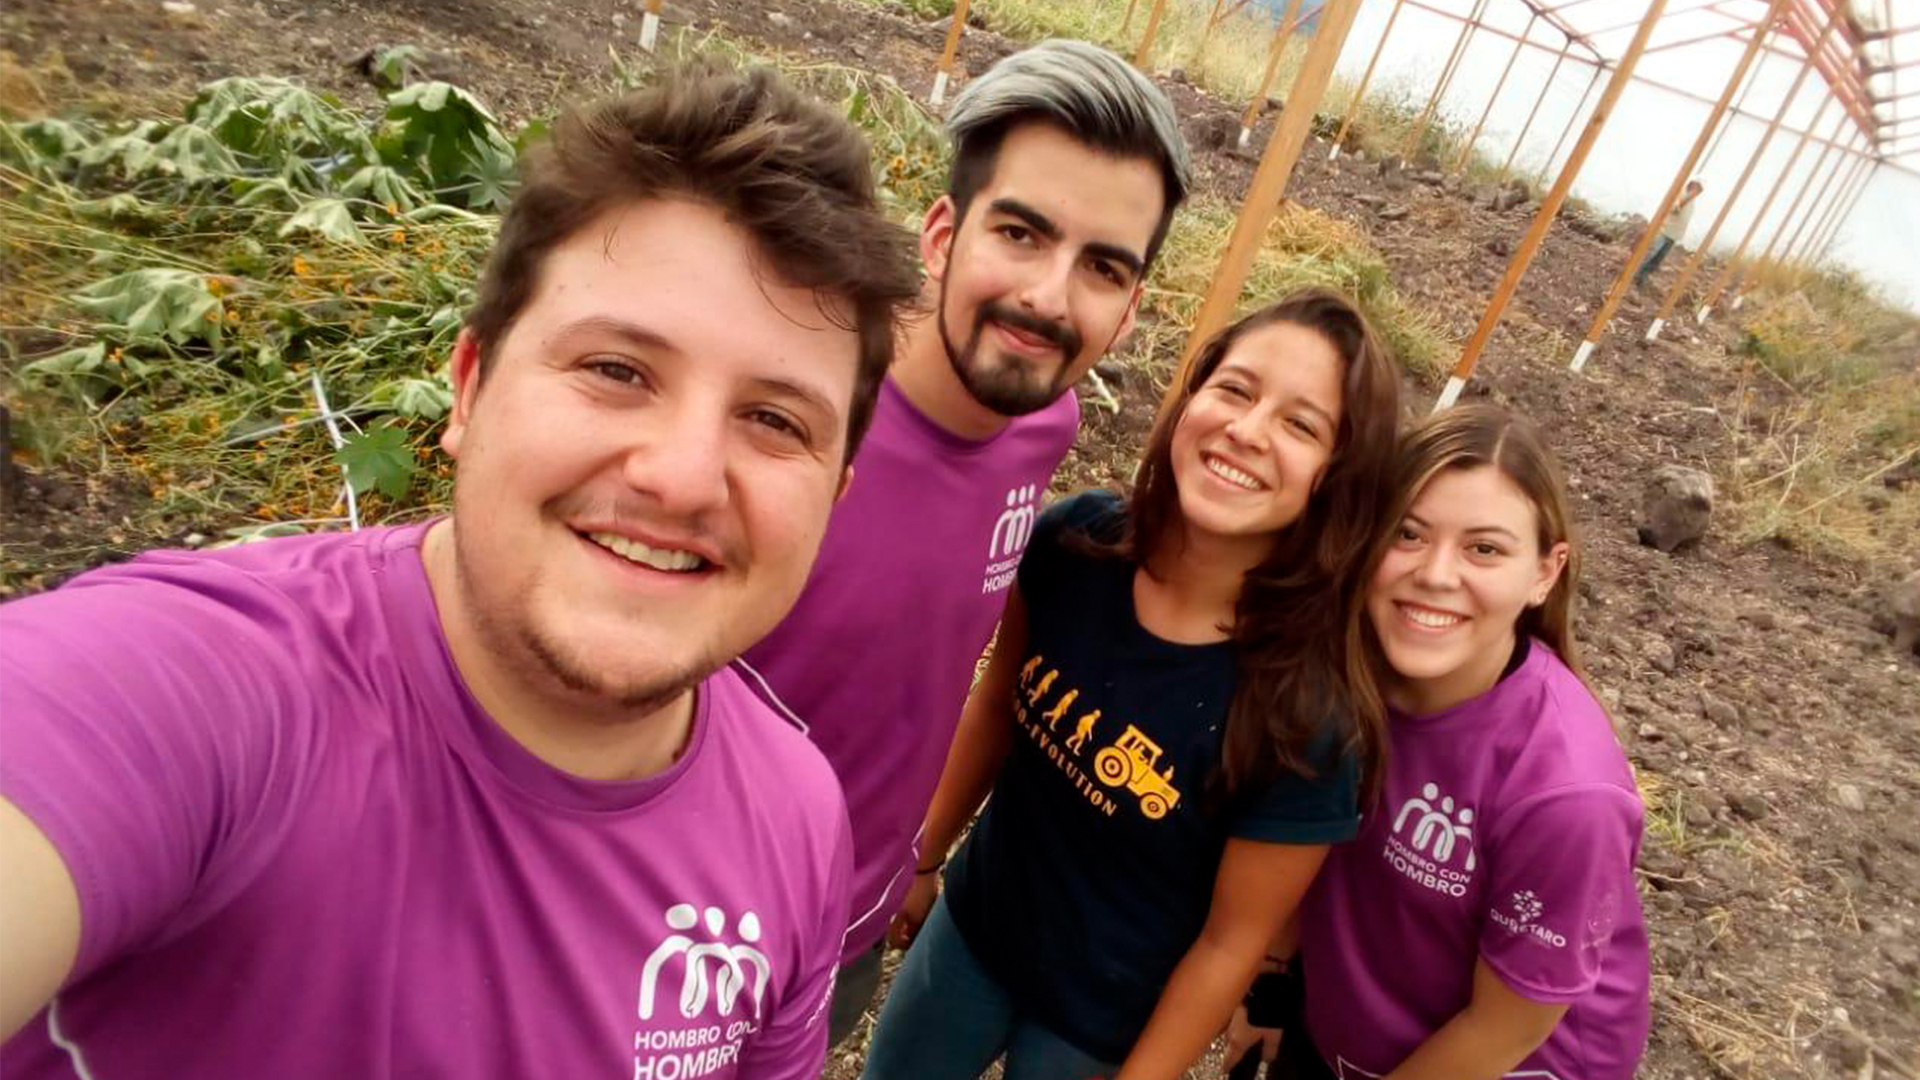 Tres estudiantes del Tec de Monterrey son reconocidas en el Programa de Voluntariado Hombro con Hombro 